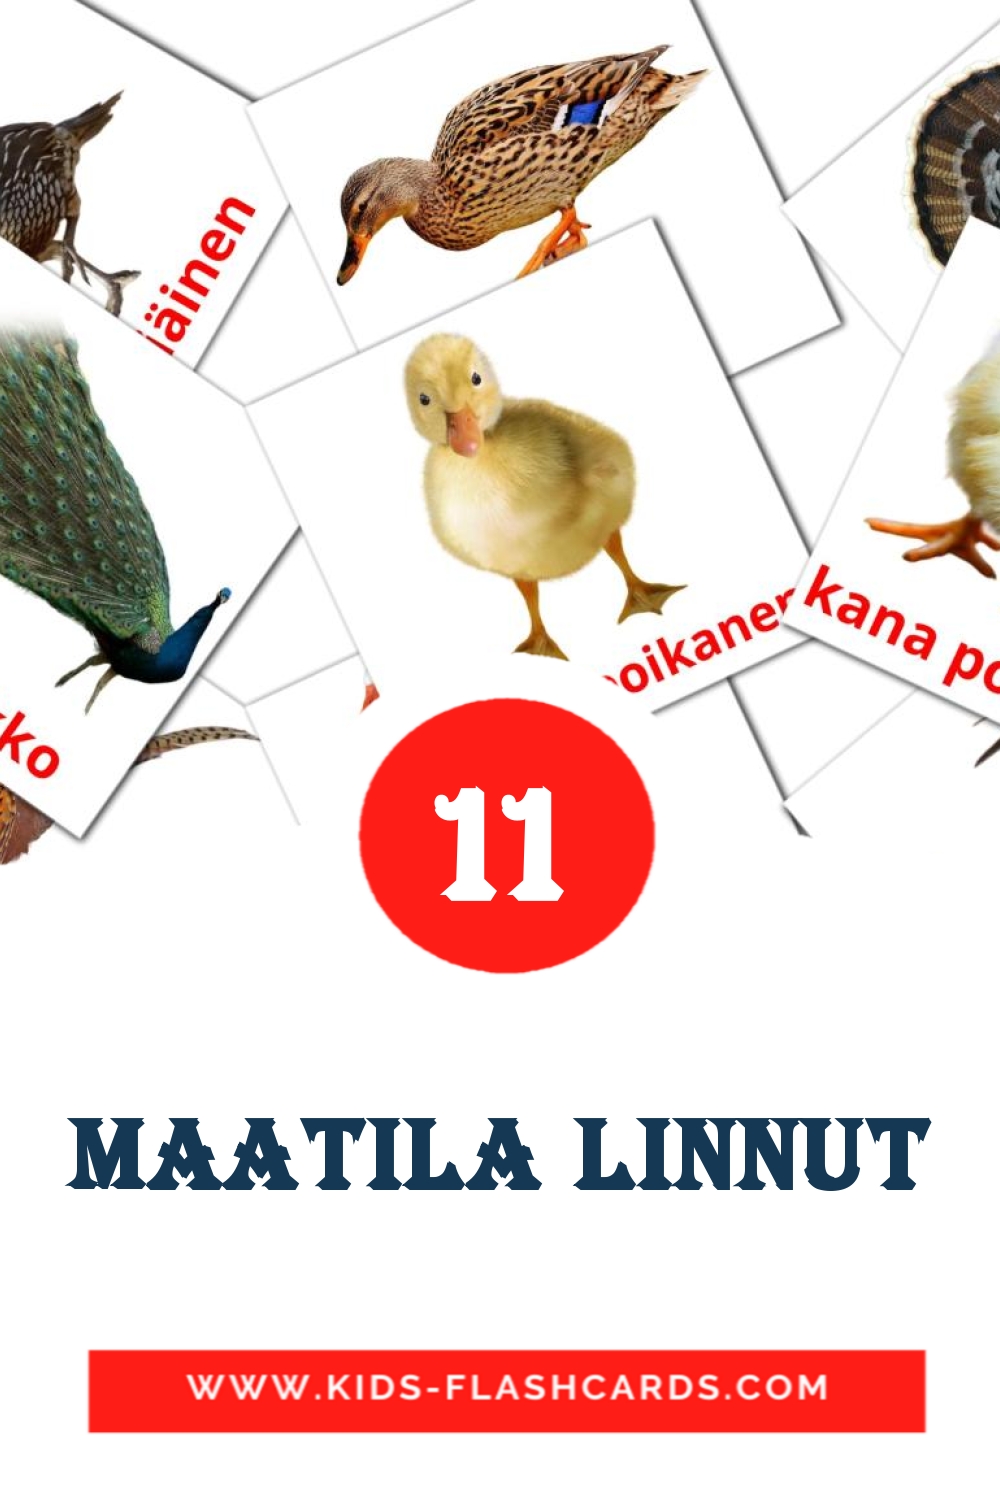 11 Maatila linnut fotokaarten voor kleuters in het finse